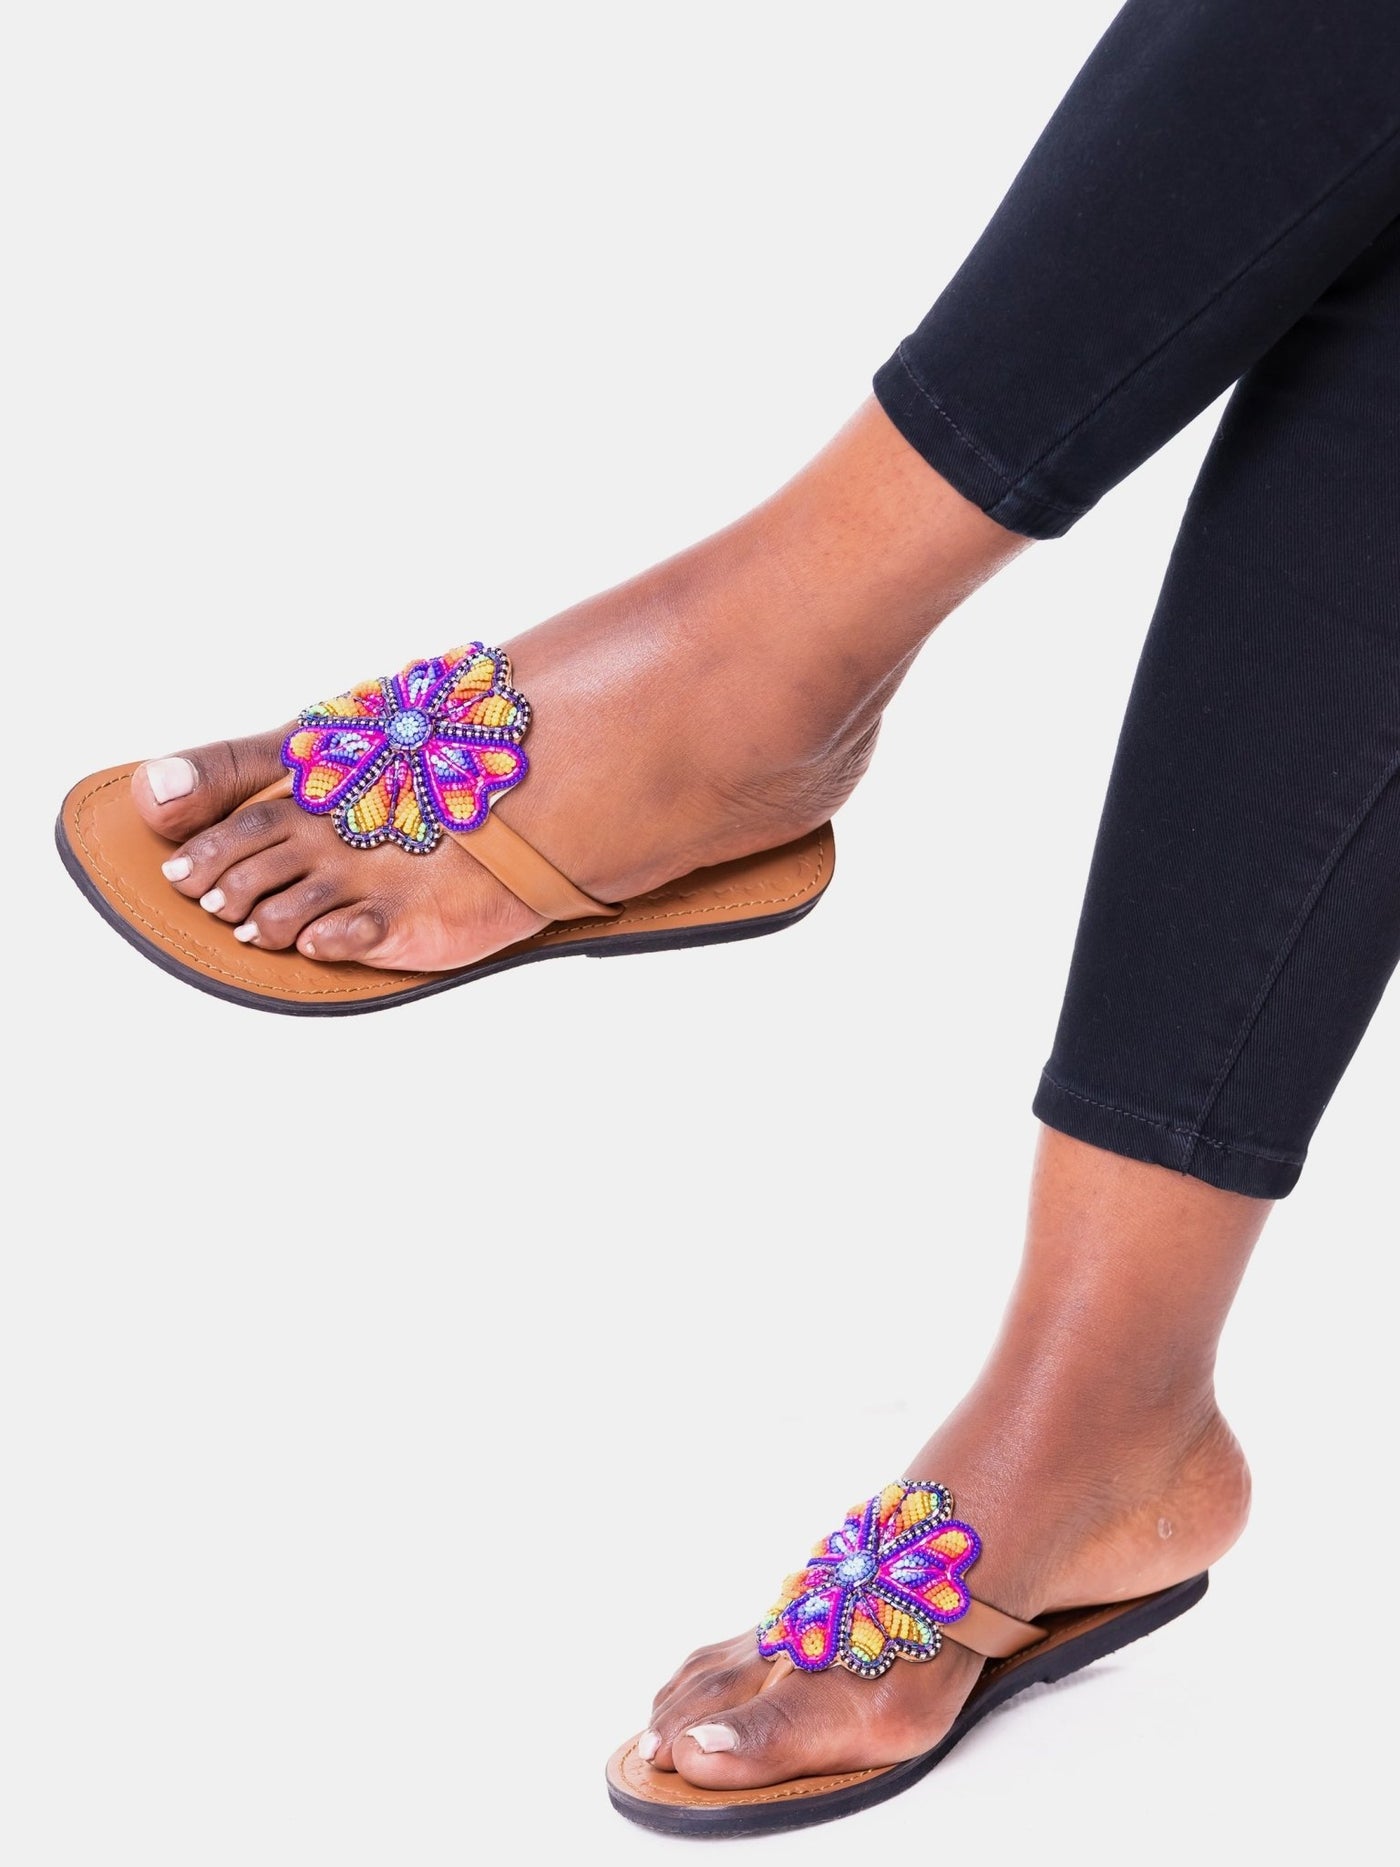 Azu Artichoke Sandals - Blue / Red / Orange Print - Shop Zetu Kenya